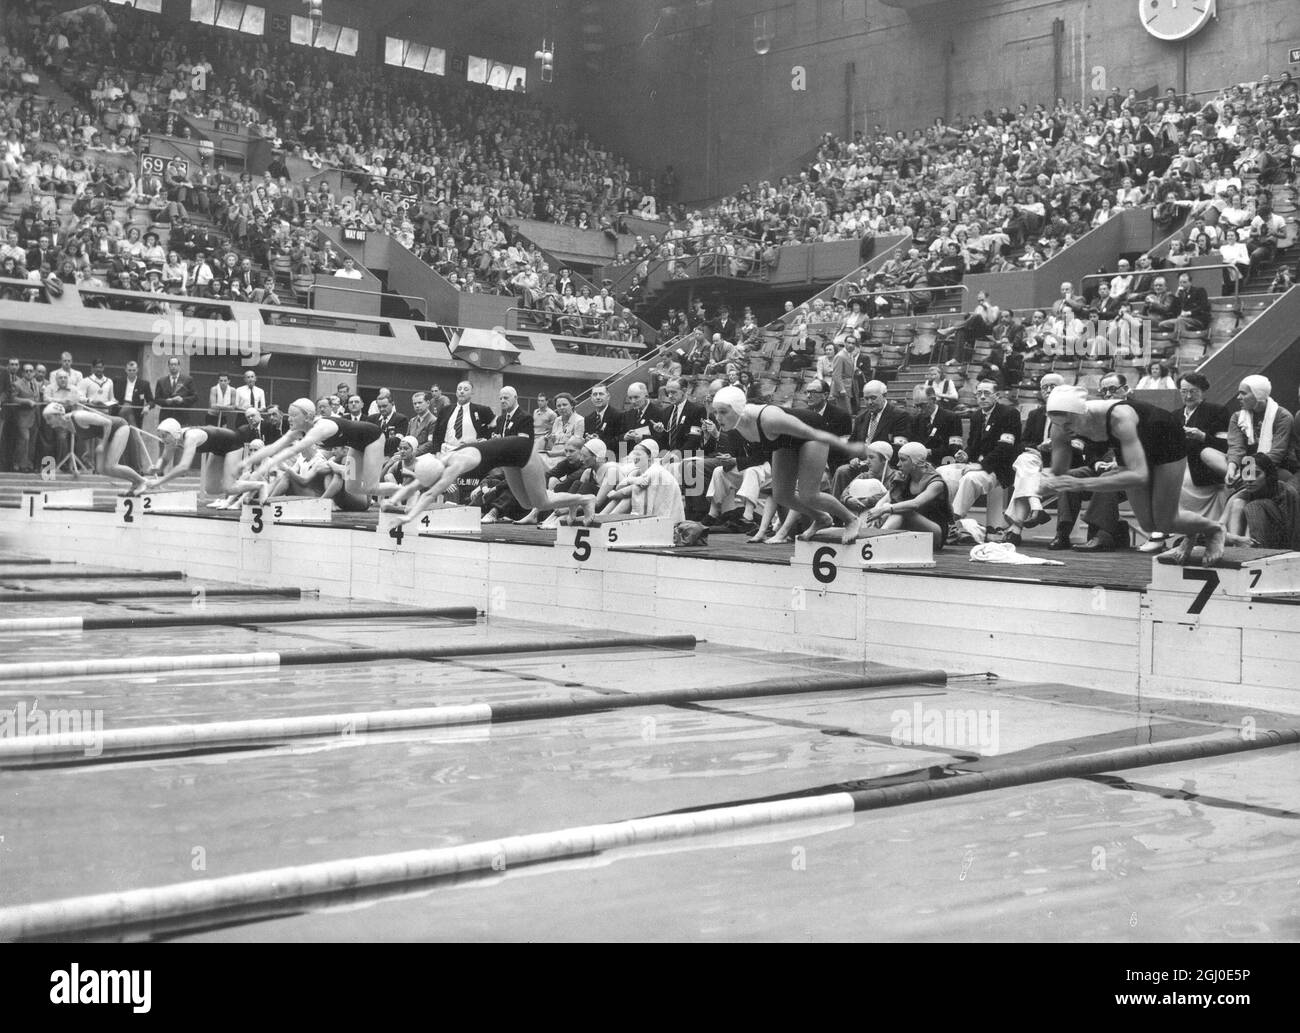 Jeux Olympiques de 1948 -Heat l'un des relais de natation de 400m pour femmes à l'Empire Pool, Wembley, Londres - dans la première semaine, la piscine Empire a été utilisée pour la natation, la plongée et les épreuves de water-polo , Dans la deuxième semaine, la piscine a été drainée et une scène a été placée sur le bassin afin que les événements de boxe puissent être organisés dans la même arène le 4 août 1948 Banque D'Images